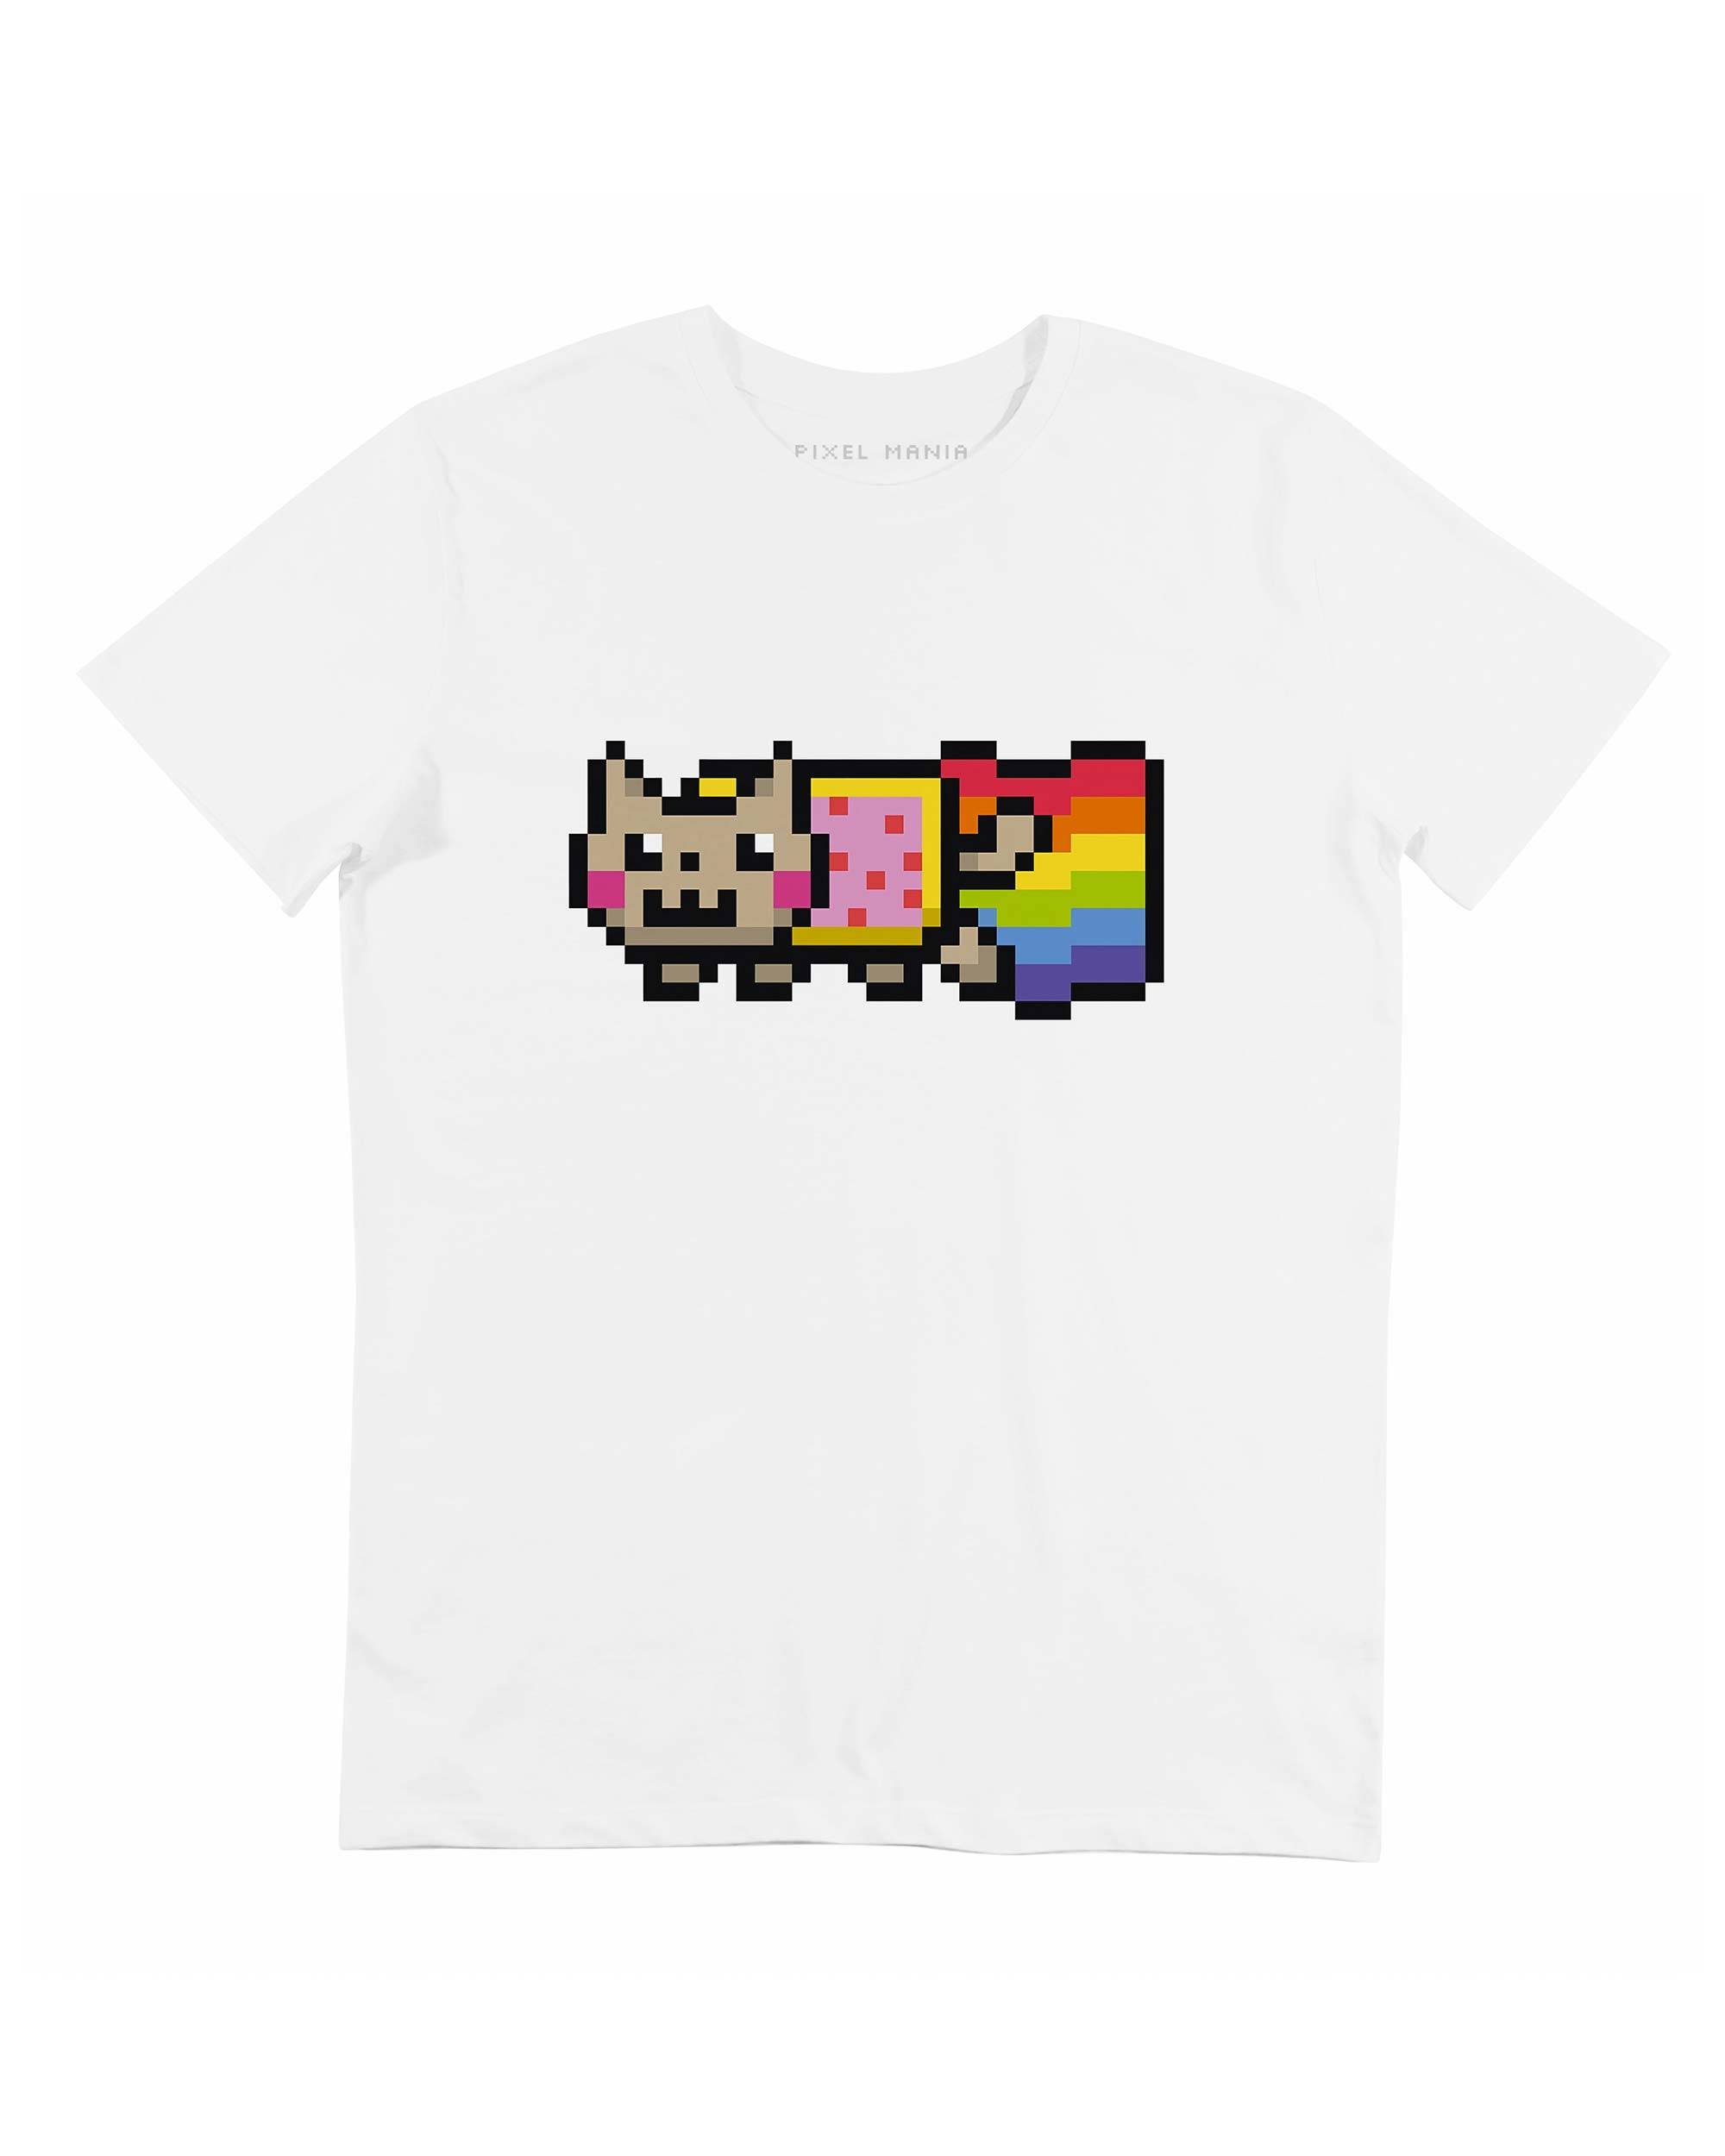 T-shirt Nyan Cat Grafitee